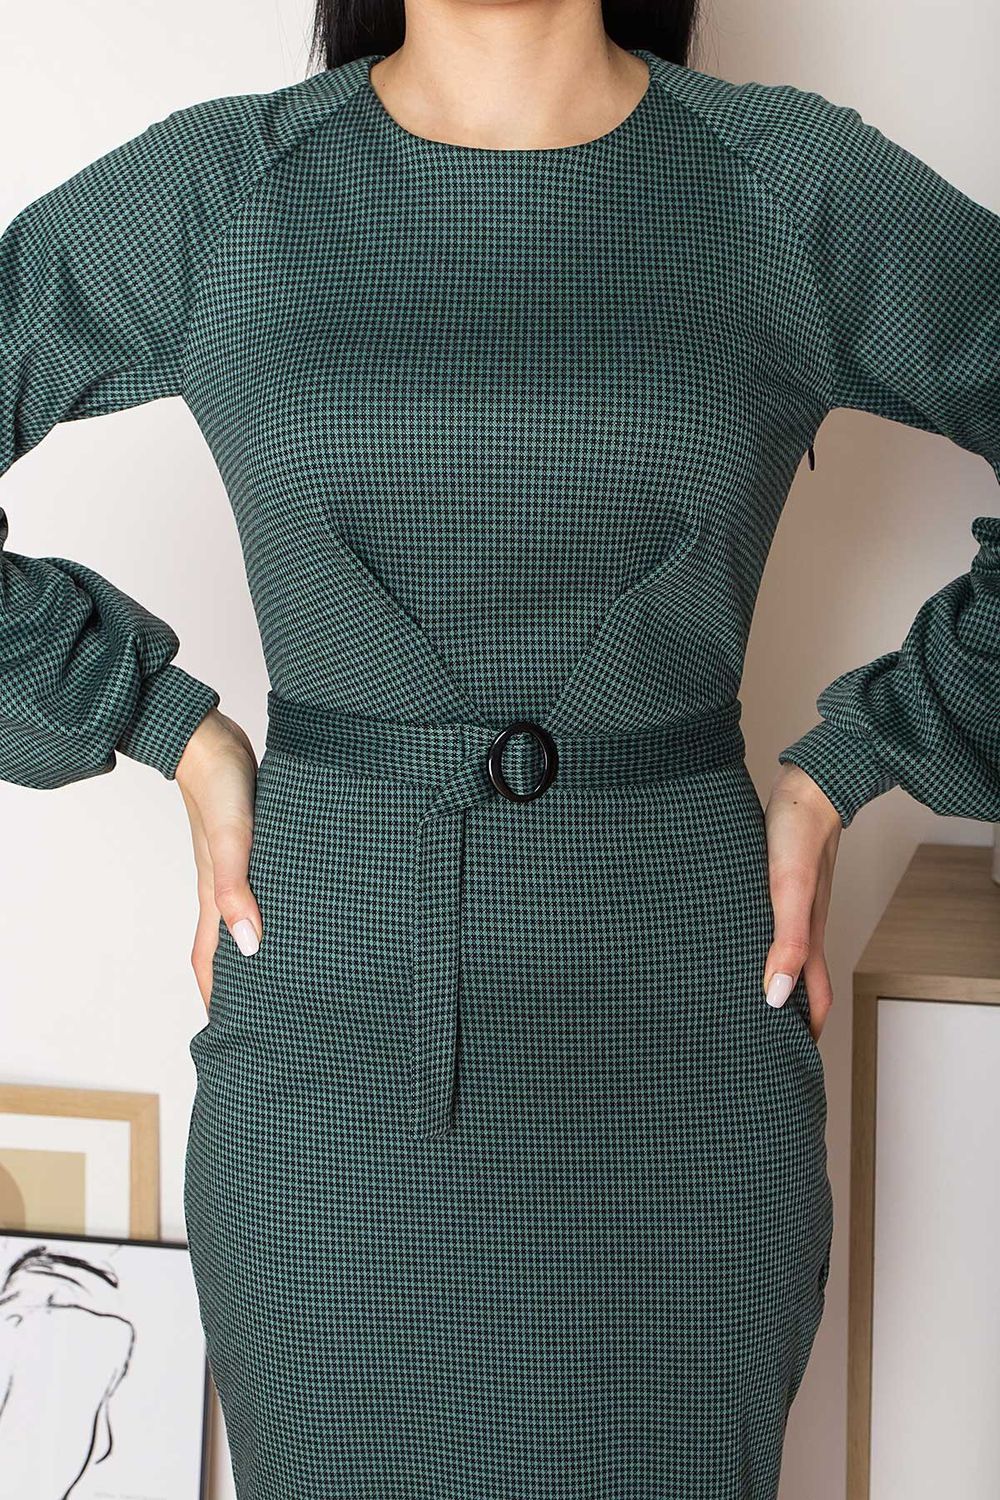 Трикотажное платье футляр офисное зеленого цвета - фото